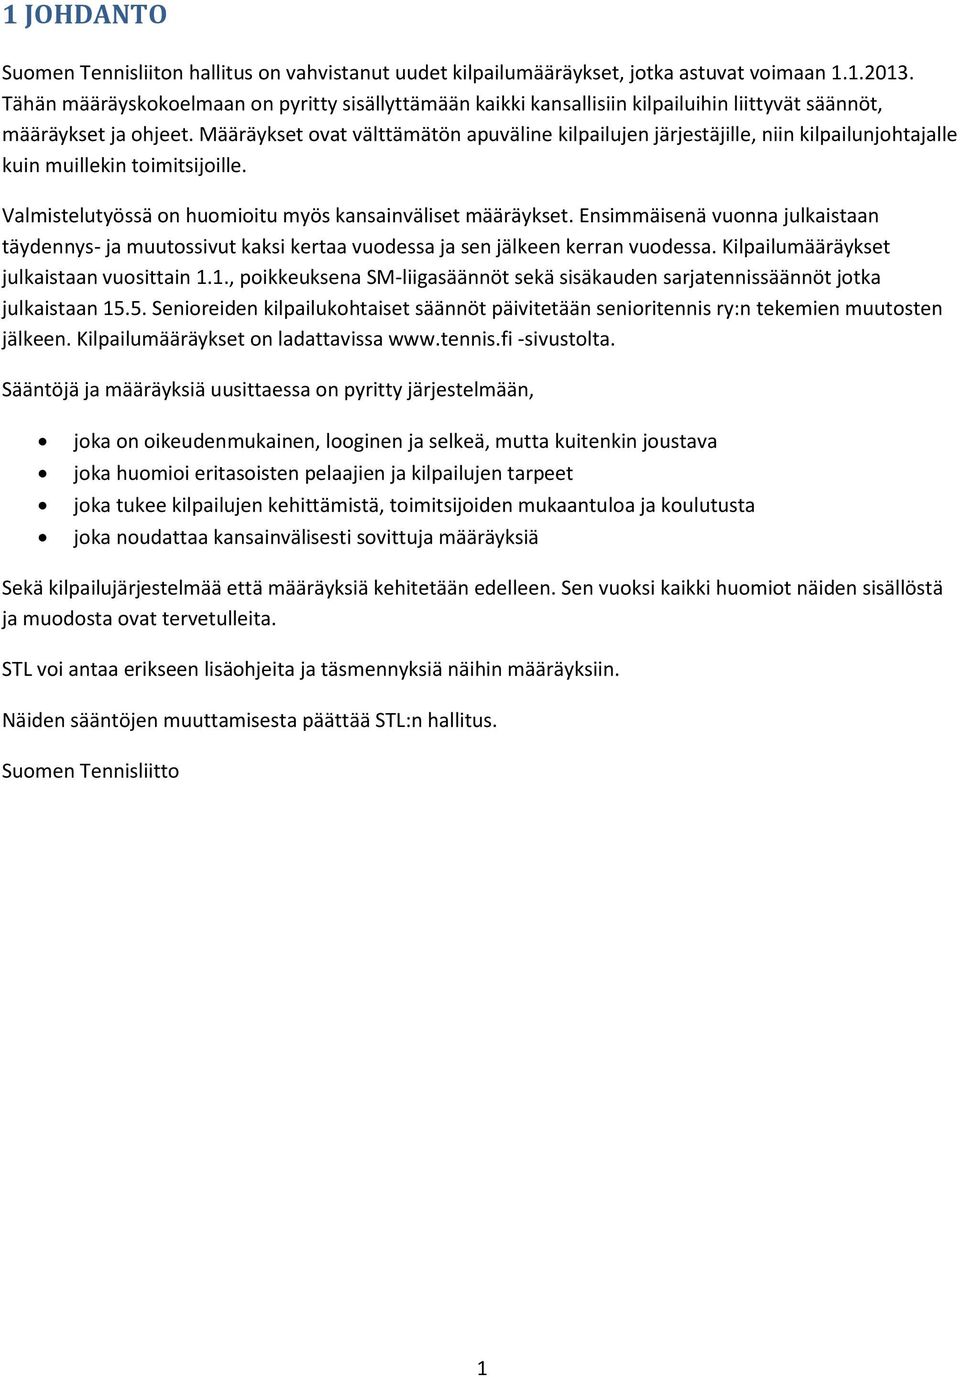 Suomen Tennisliitto [KILPAILUMÄÄRÄYKSET] - PDF Free Download